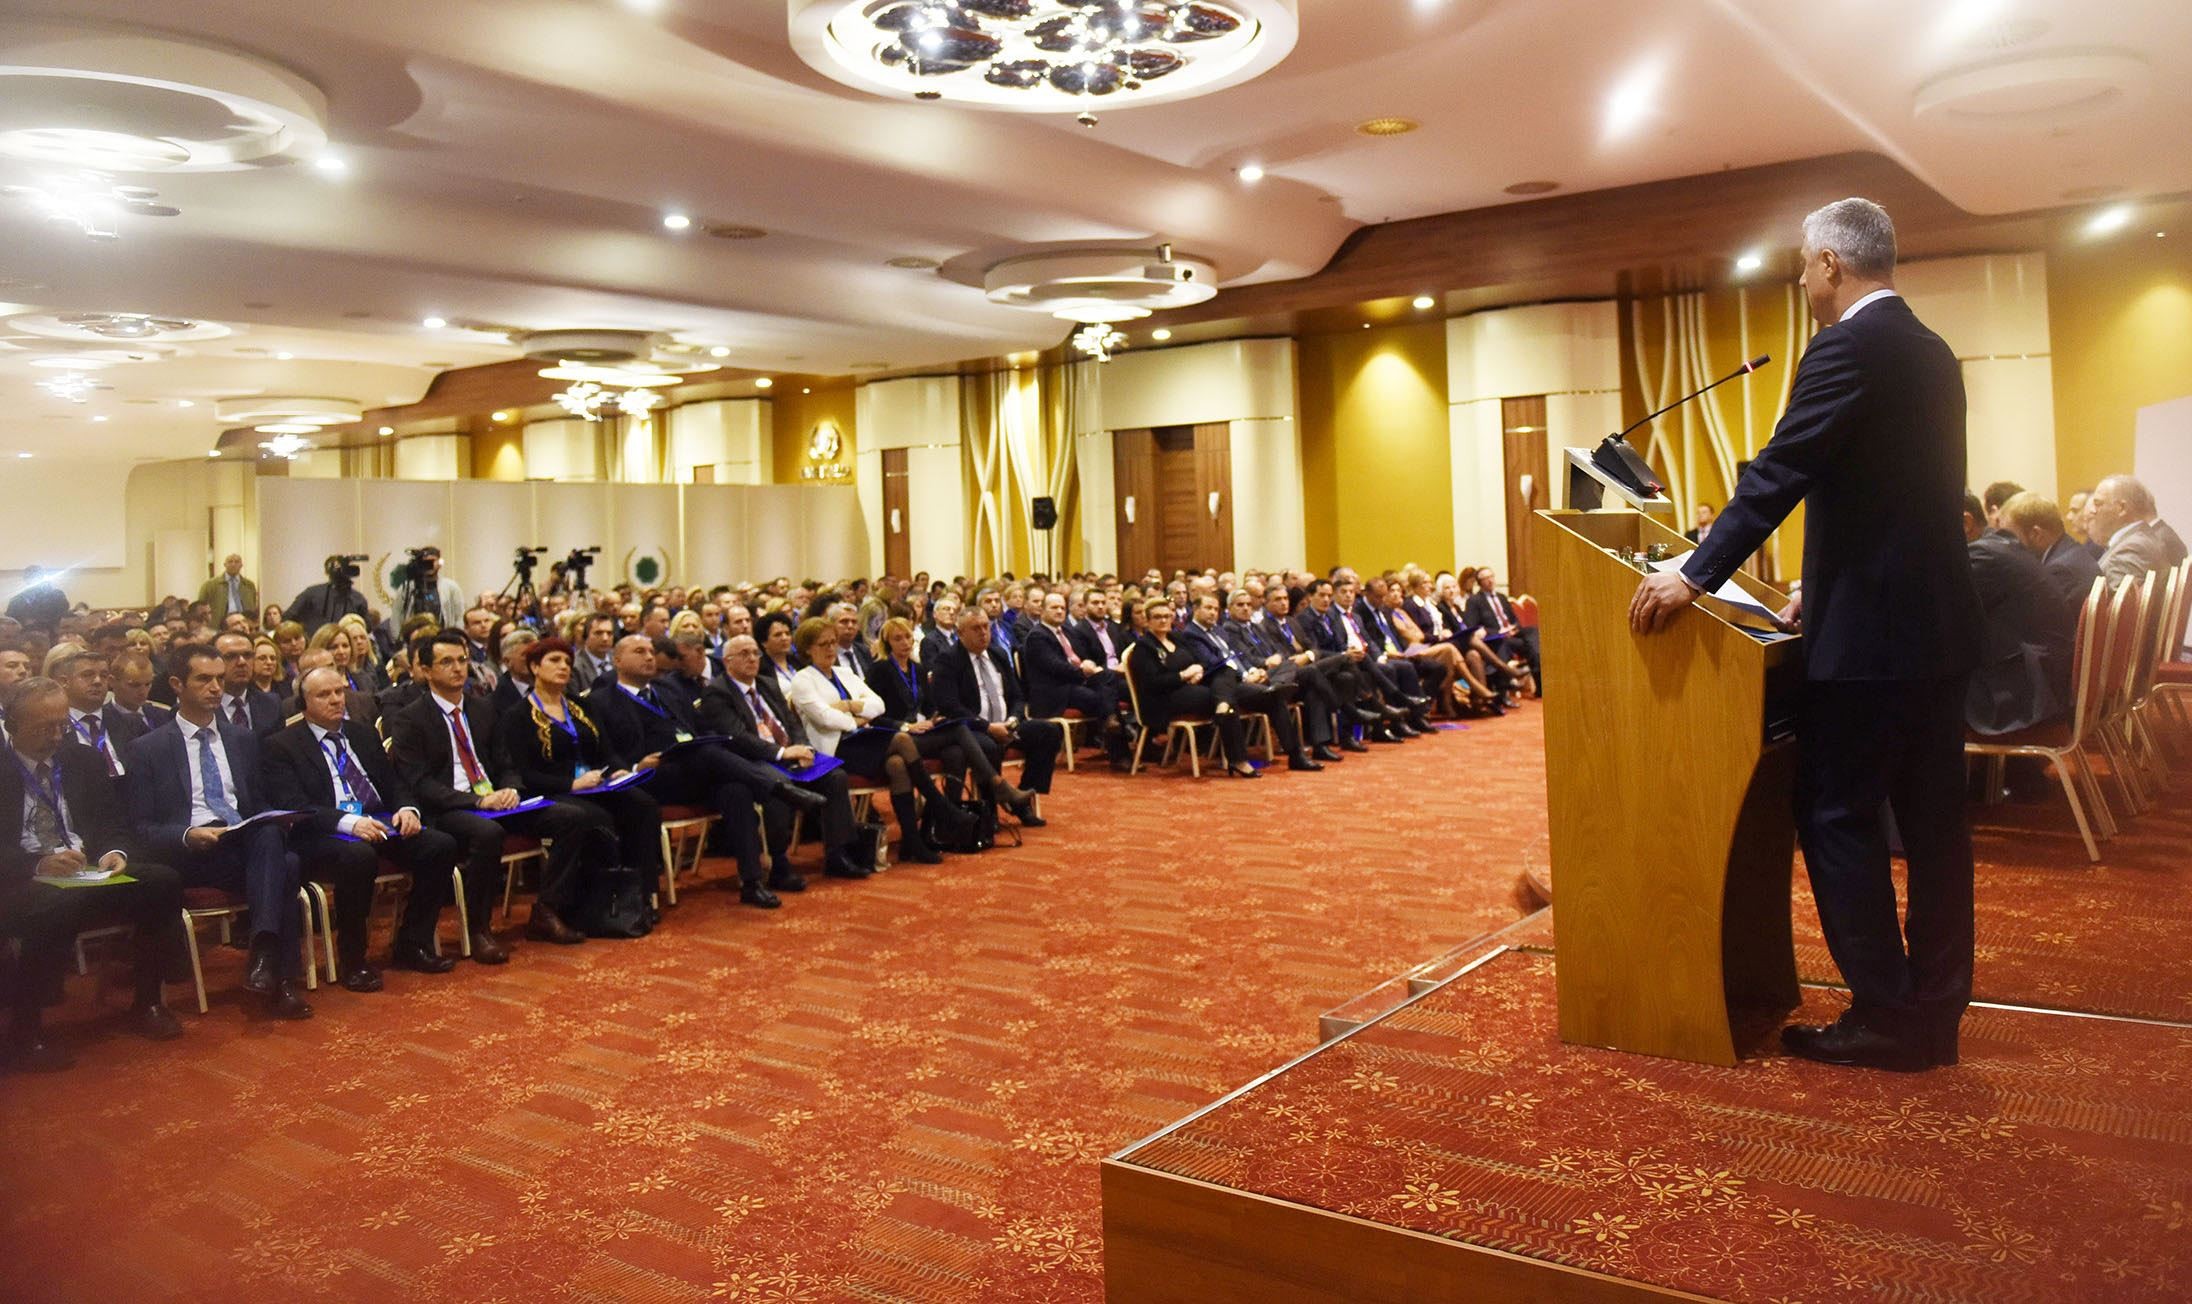  Presidenti Thaçi kërkon nga gjyqtarët më shumë përkushtim në shërbim të shtetit